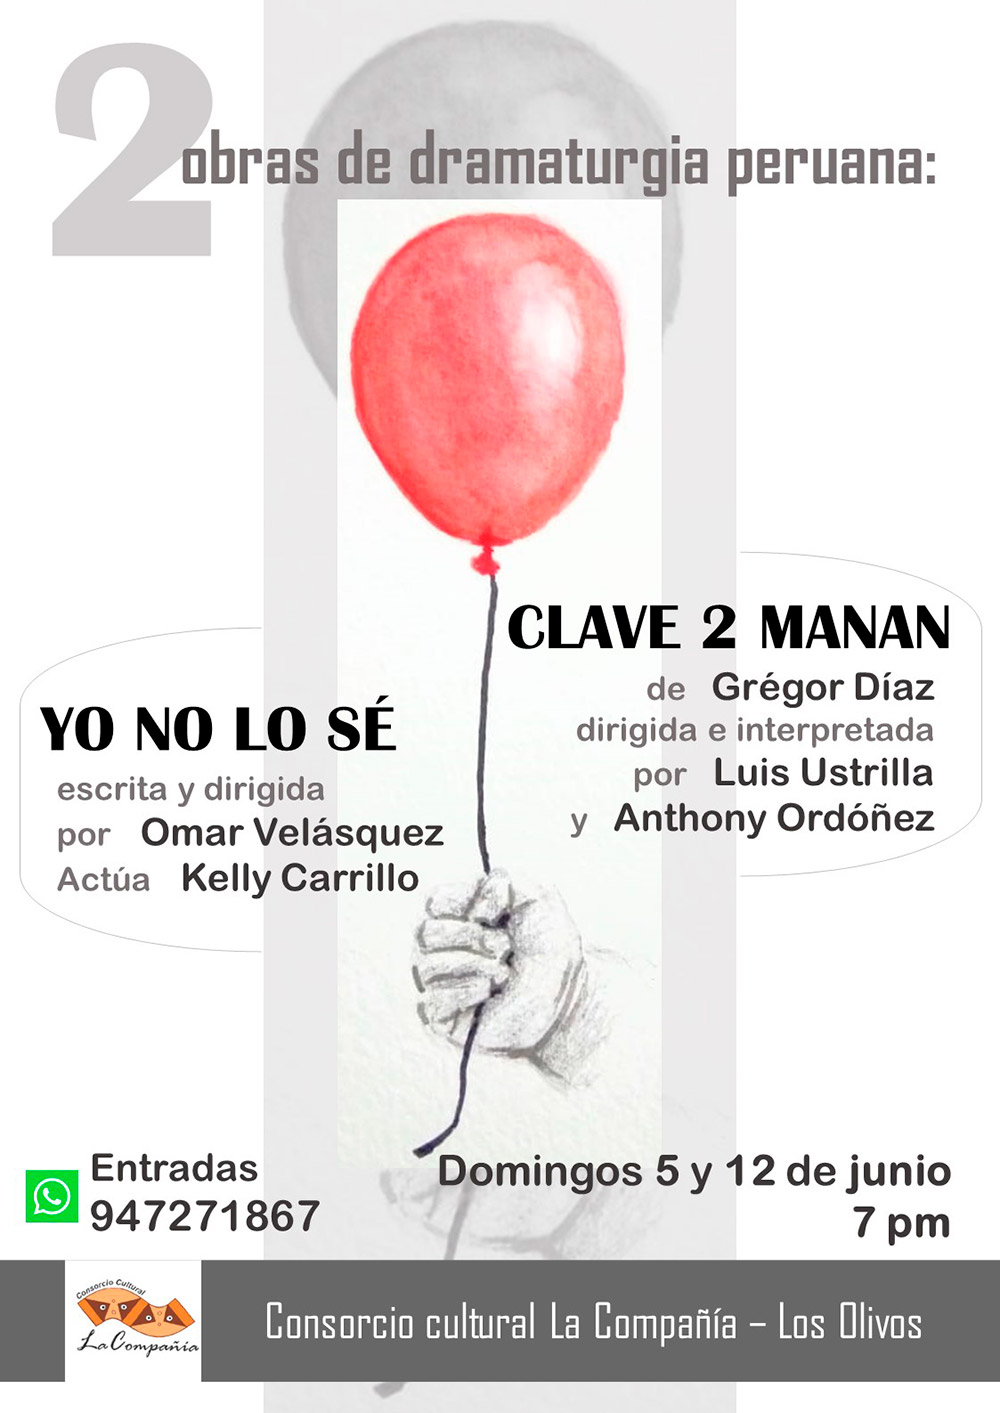 Teatro de impacto en Los Olivos 2 obras de dramaturgia peruana